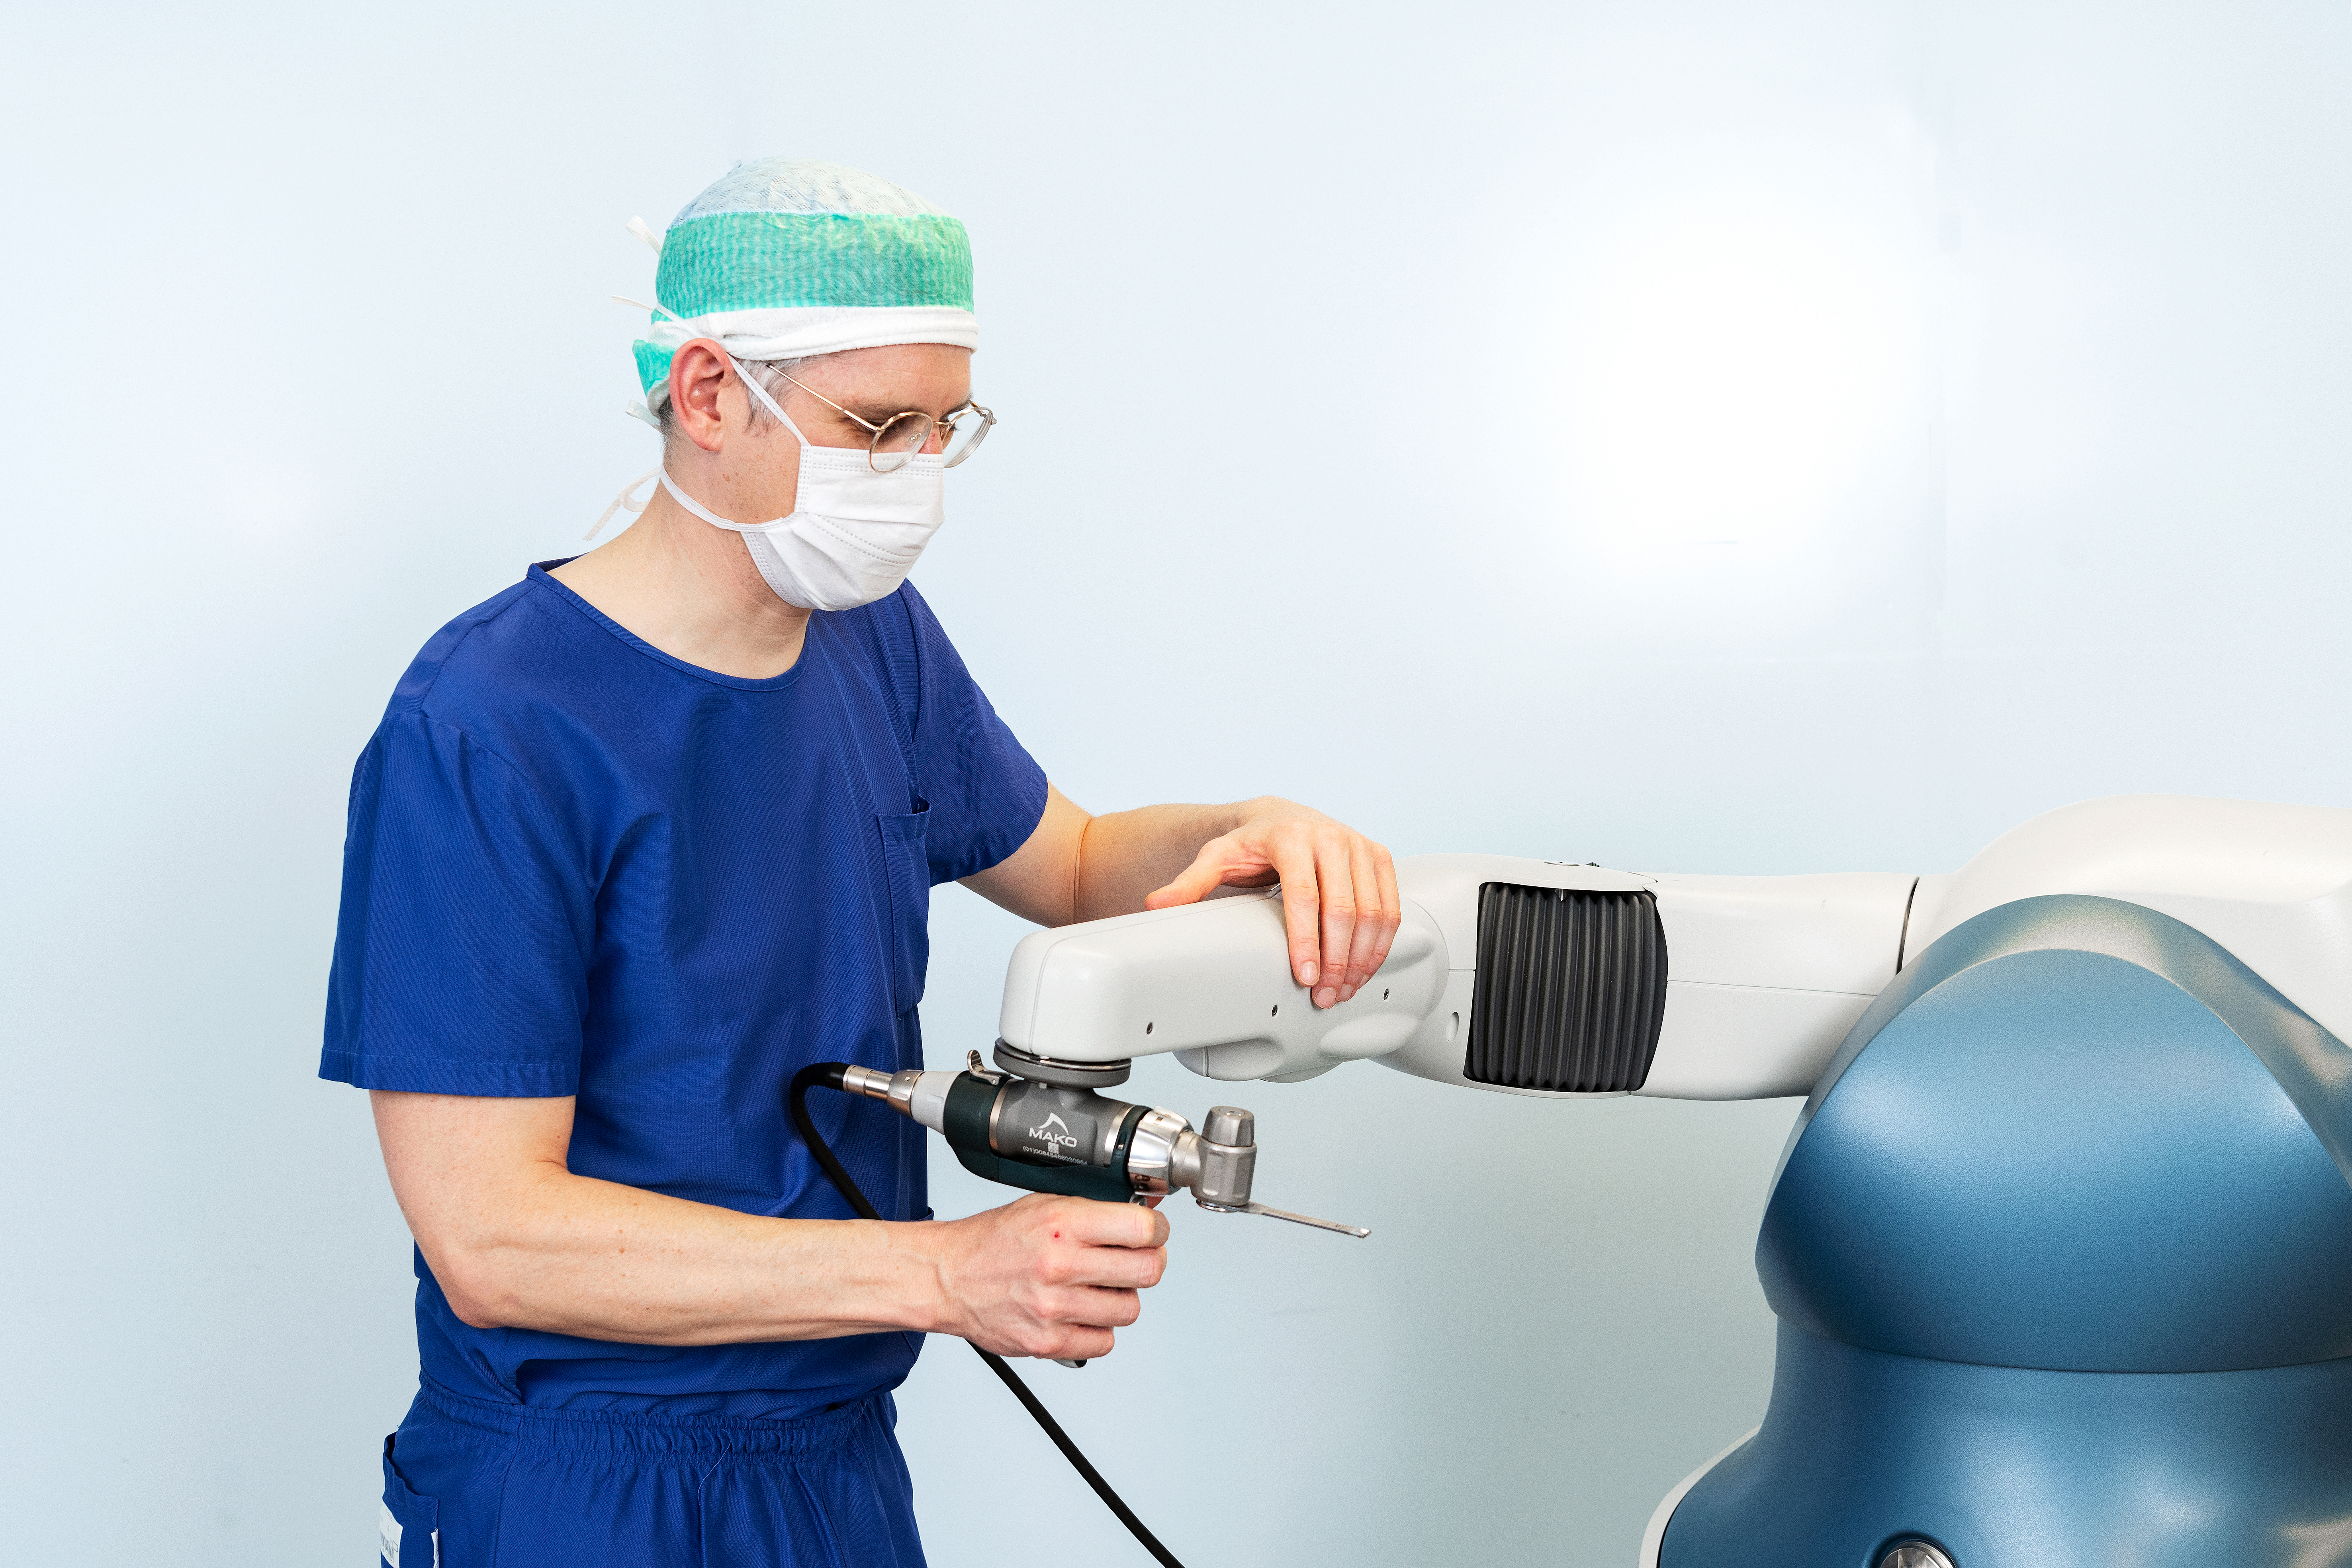 Die Säge wird während der Operation stets vom Chirurgen selbst geführt, der Roboter kontrolliert jedoch die korrekte Schnittebene und stoppt die Säge, sofern der definierte Bereich verlassen wird.